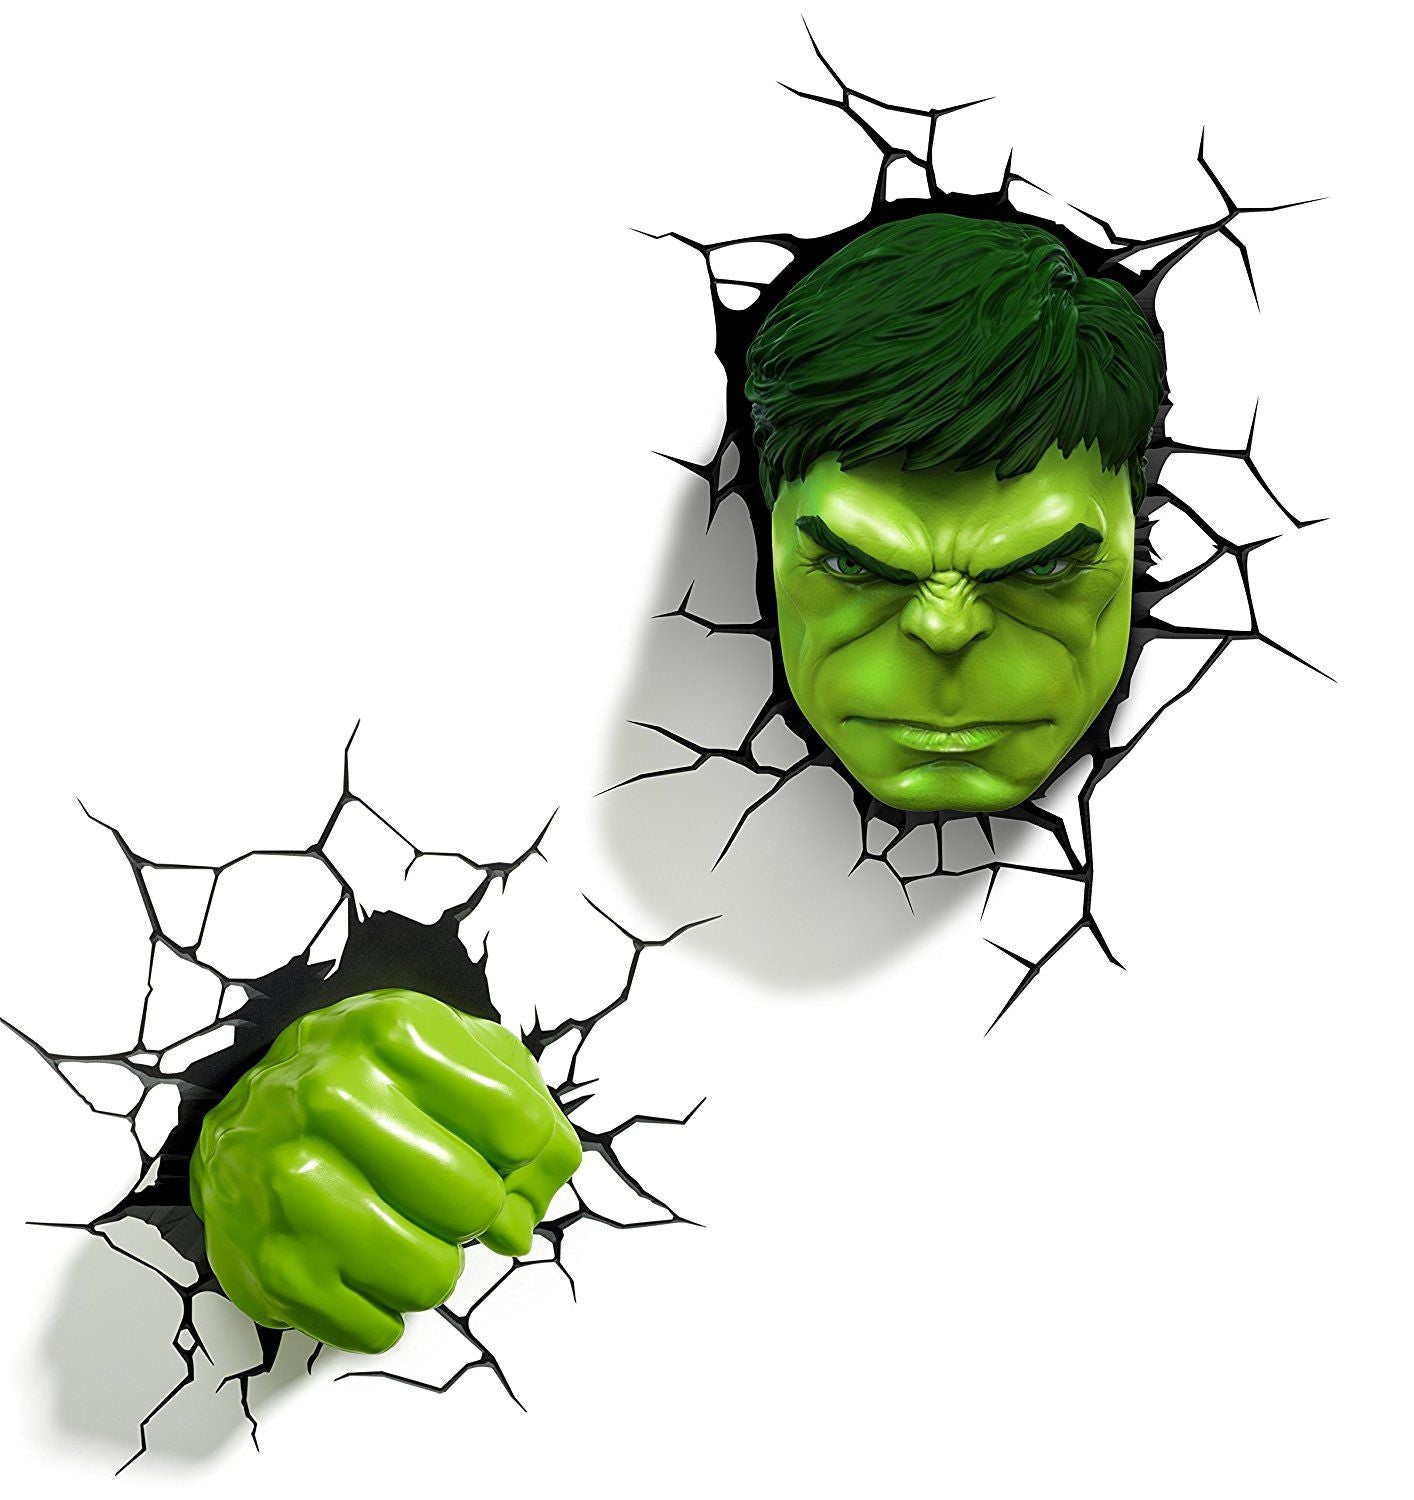 Marvel Avengers Hulk Mask Costume LED Light Eye For Kids Party Mask  (Green, Pack of 1)